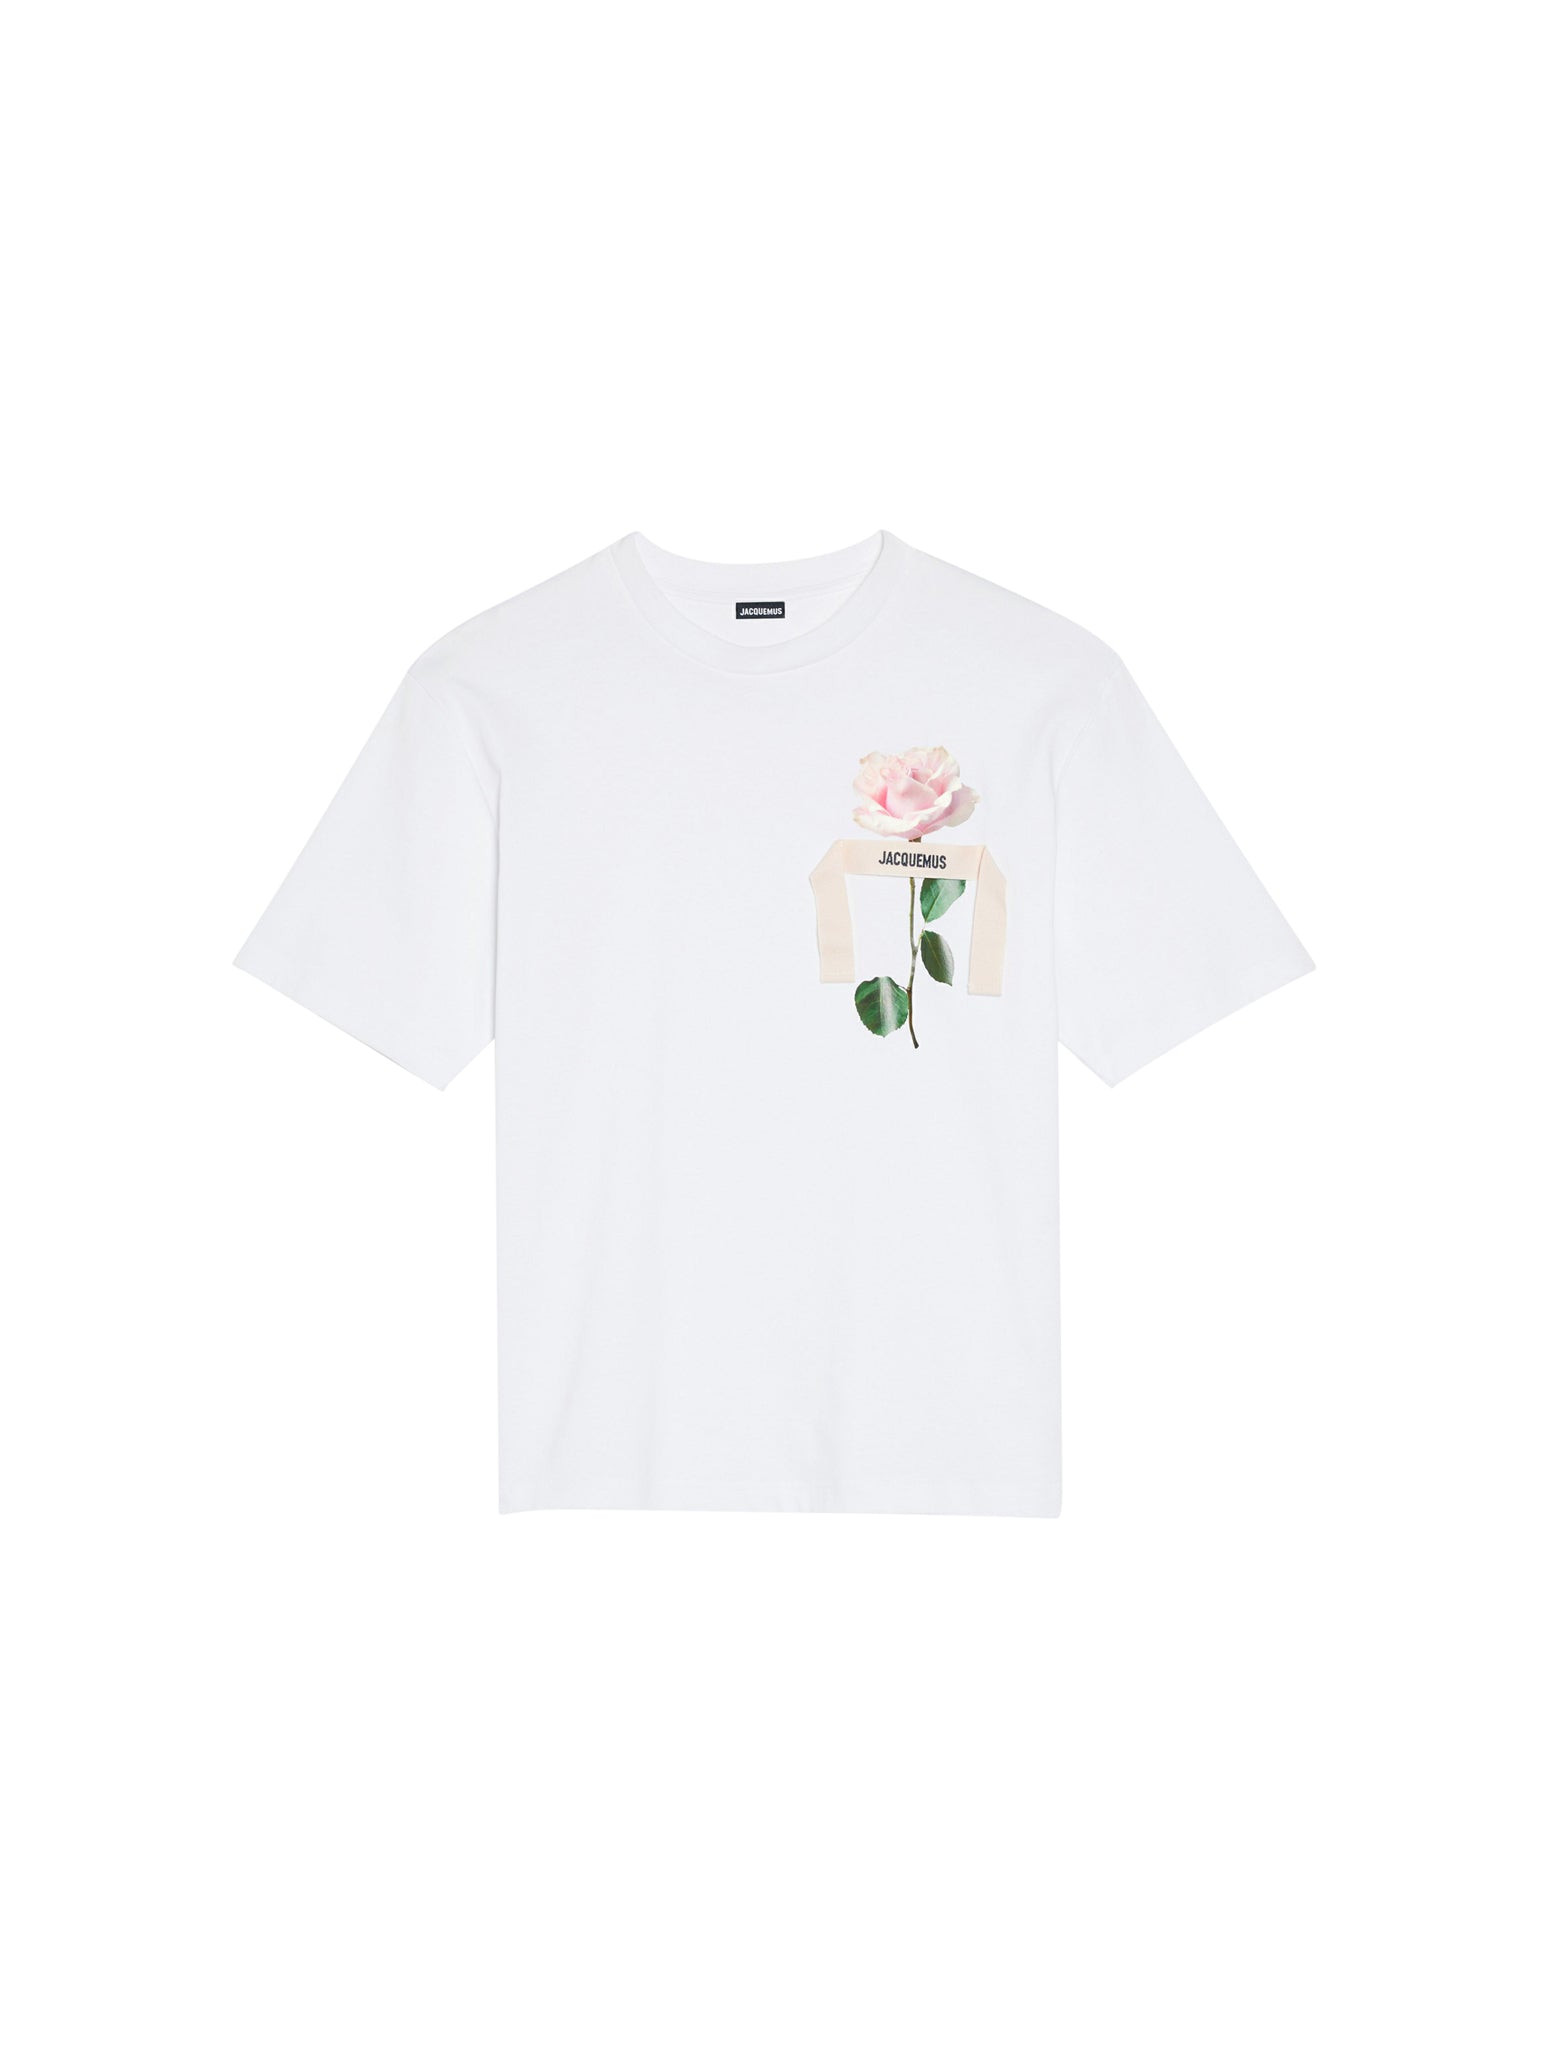 Le t-shirt Rose